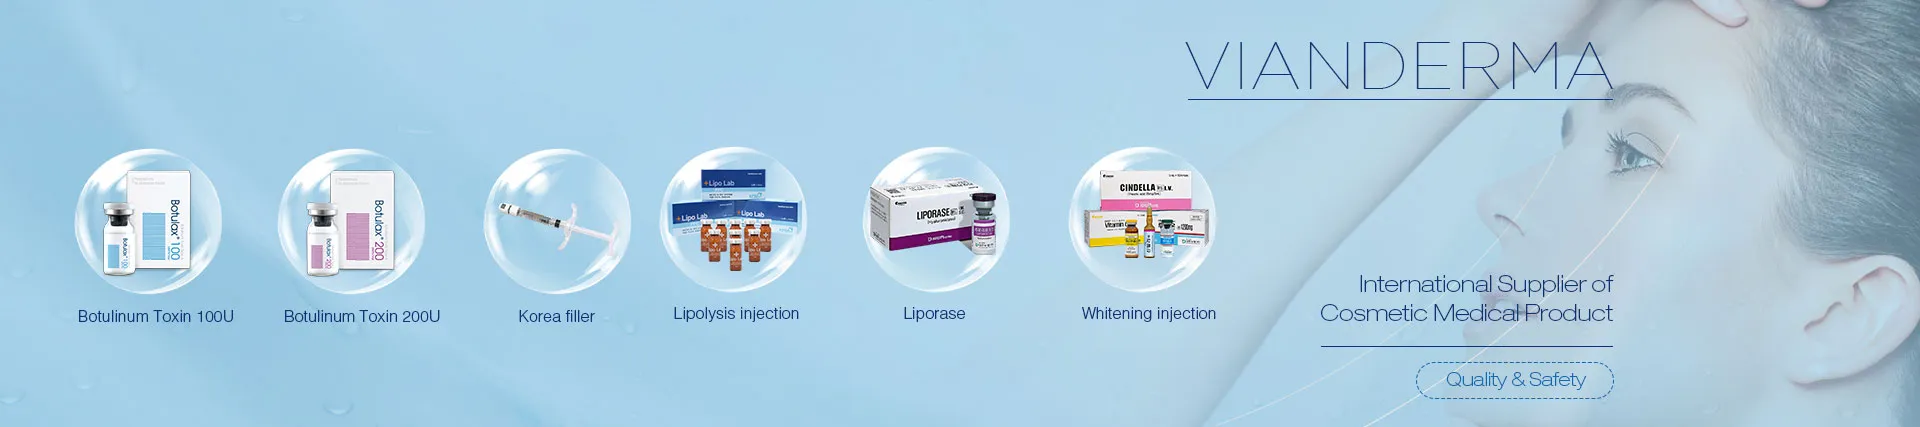 VIANDERMA - Fournisseur international de produits médicaux cosmétiques